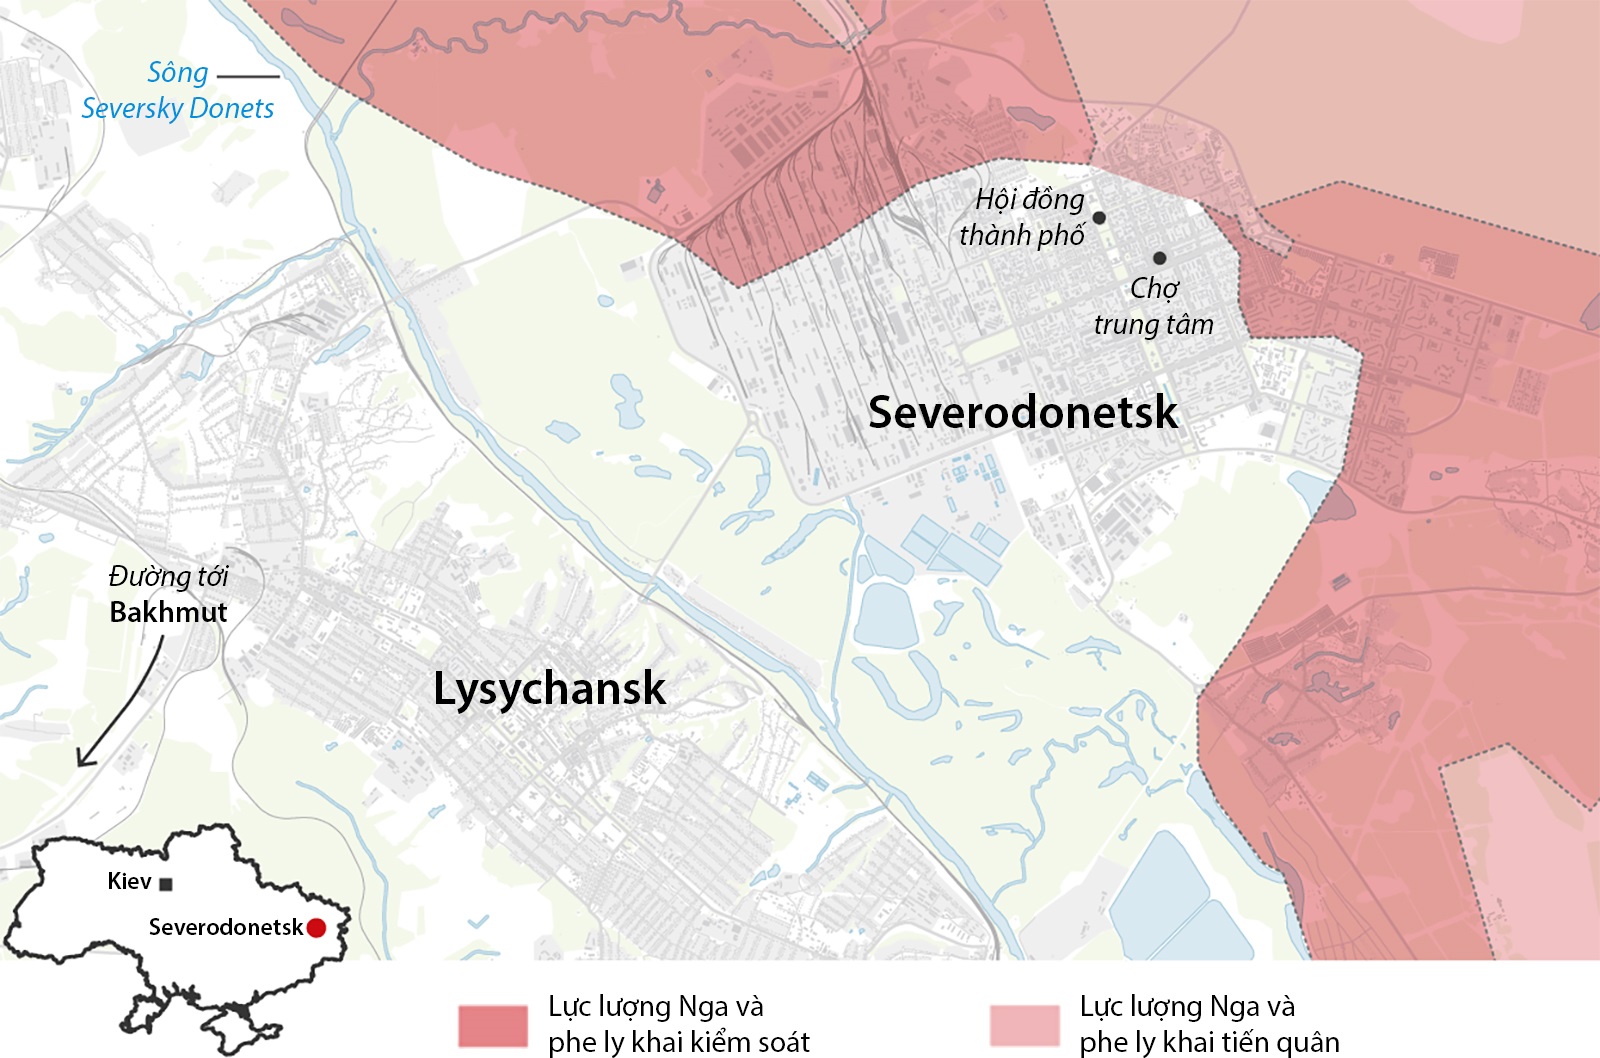 Lực lượng Nga vây ép quân đội Ukraine tại Severodonetsk từ ba mặt. Bấm vào hình để xem chi tiết.